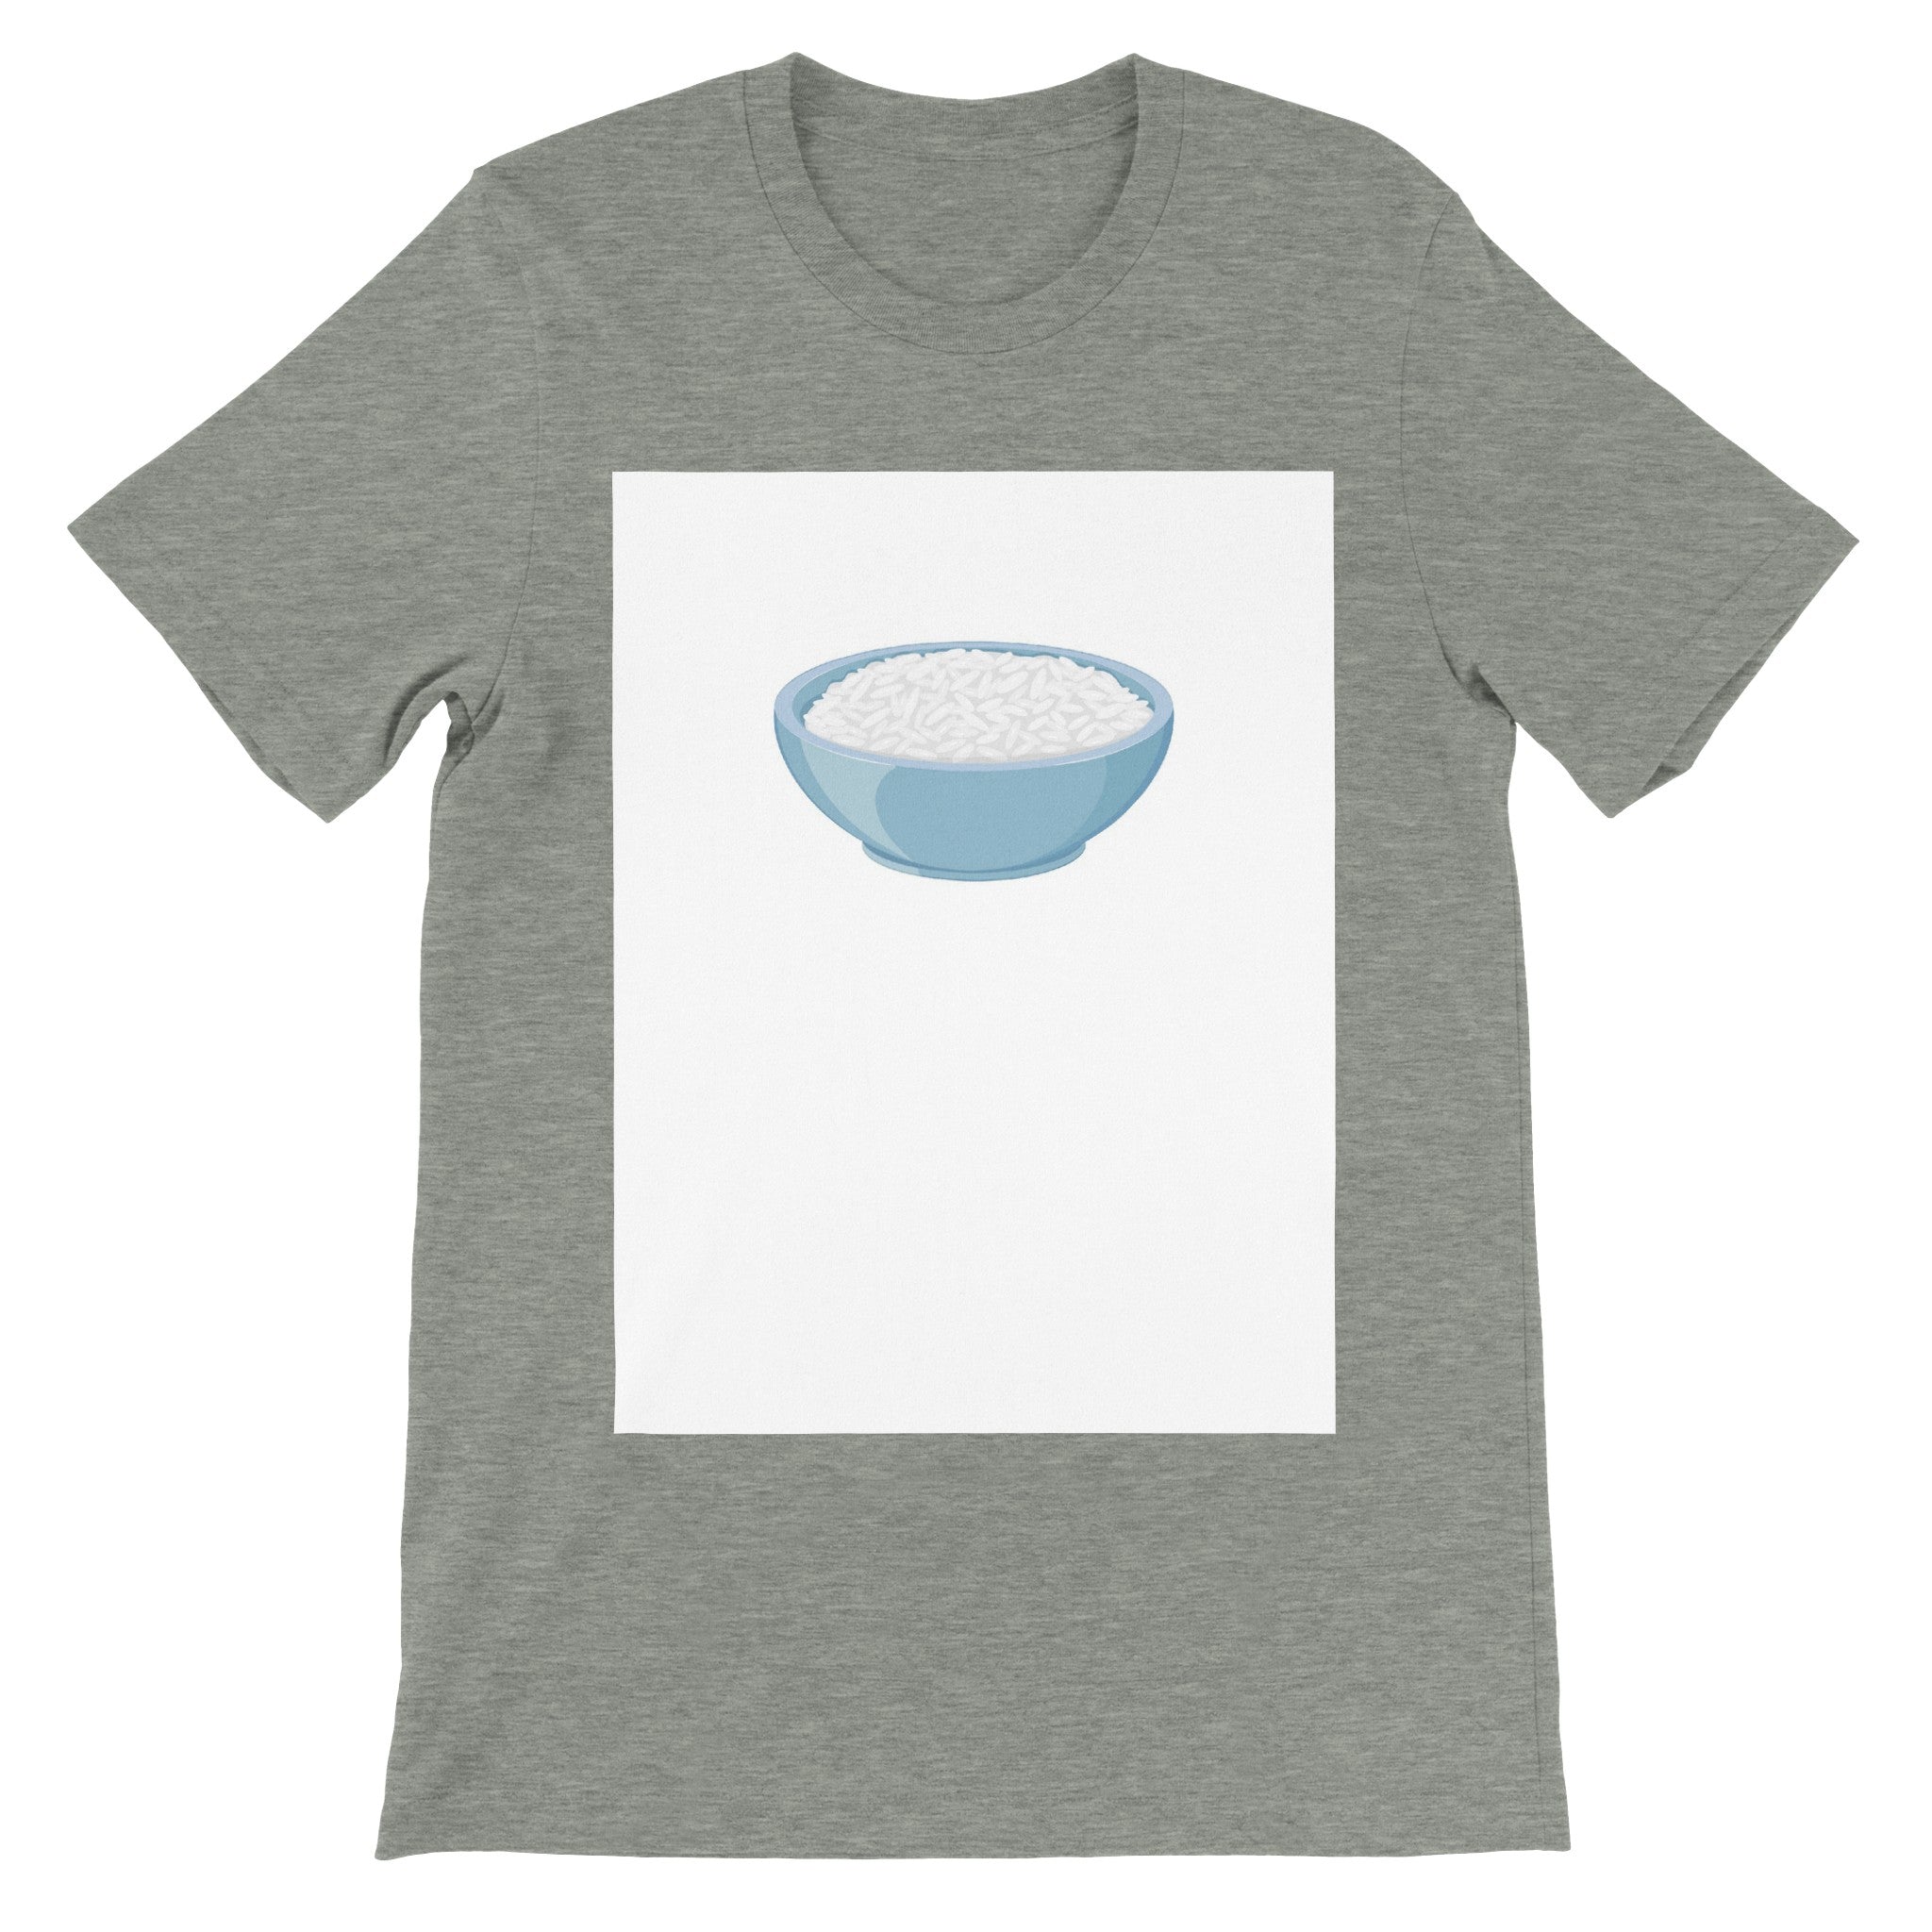 Premium Unisex Crewneck T-shirt - Rice